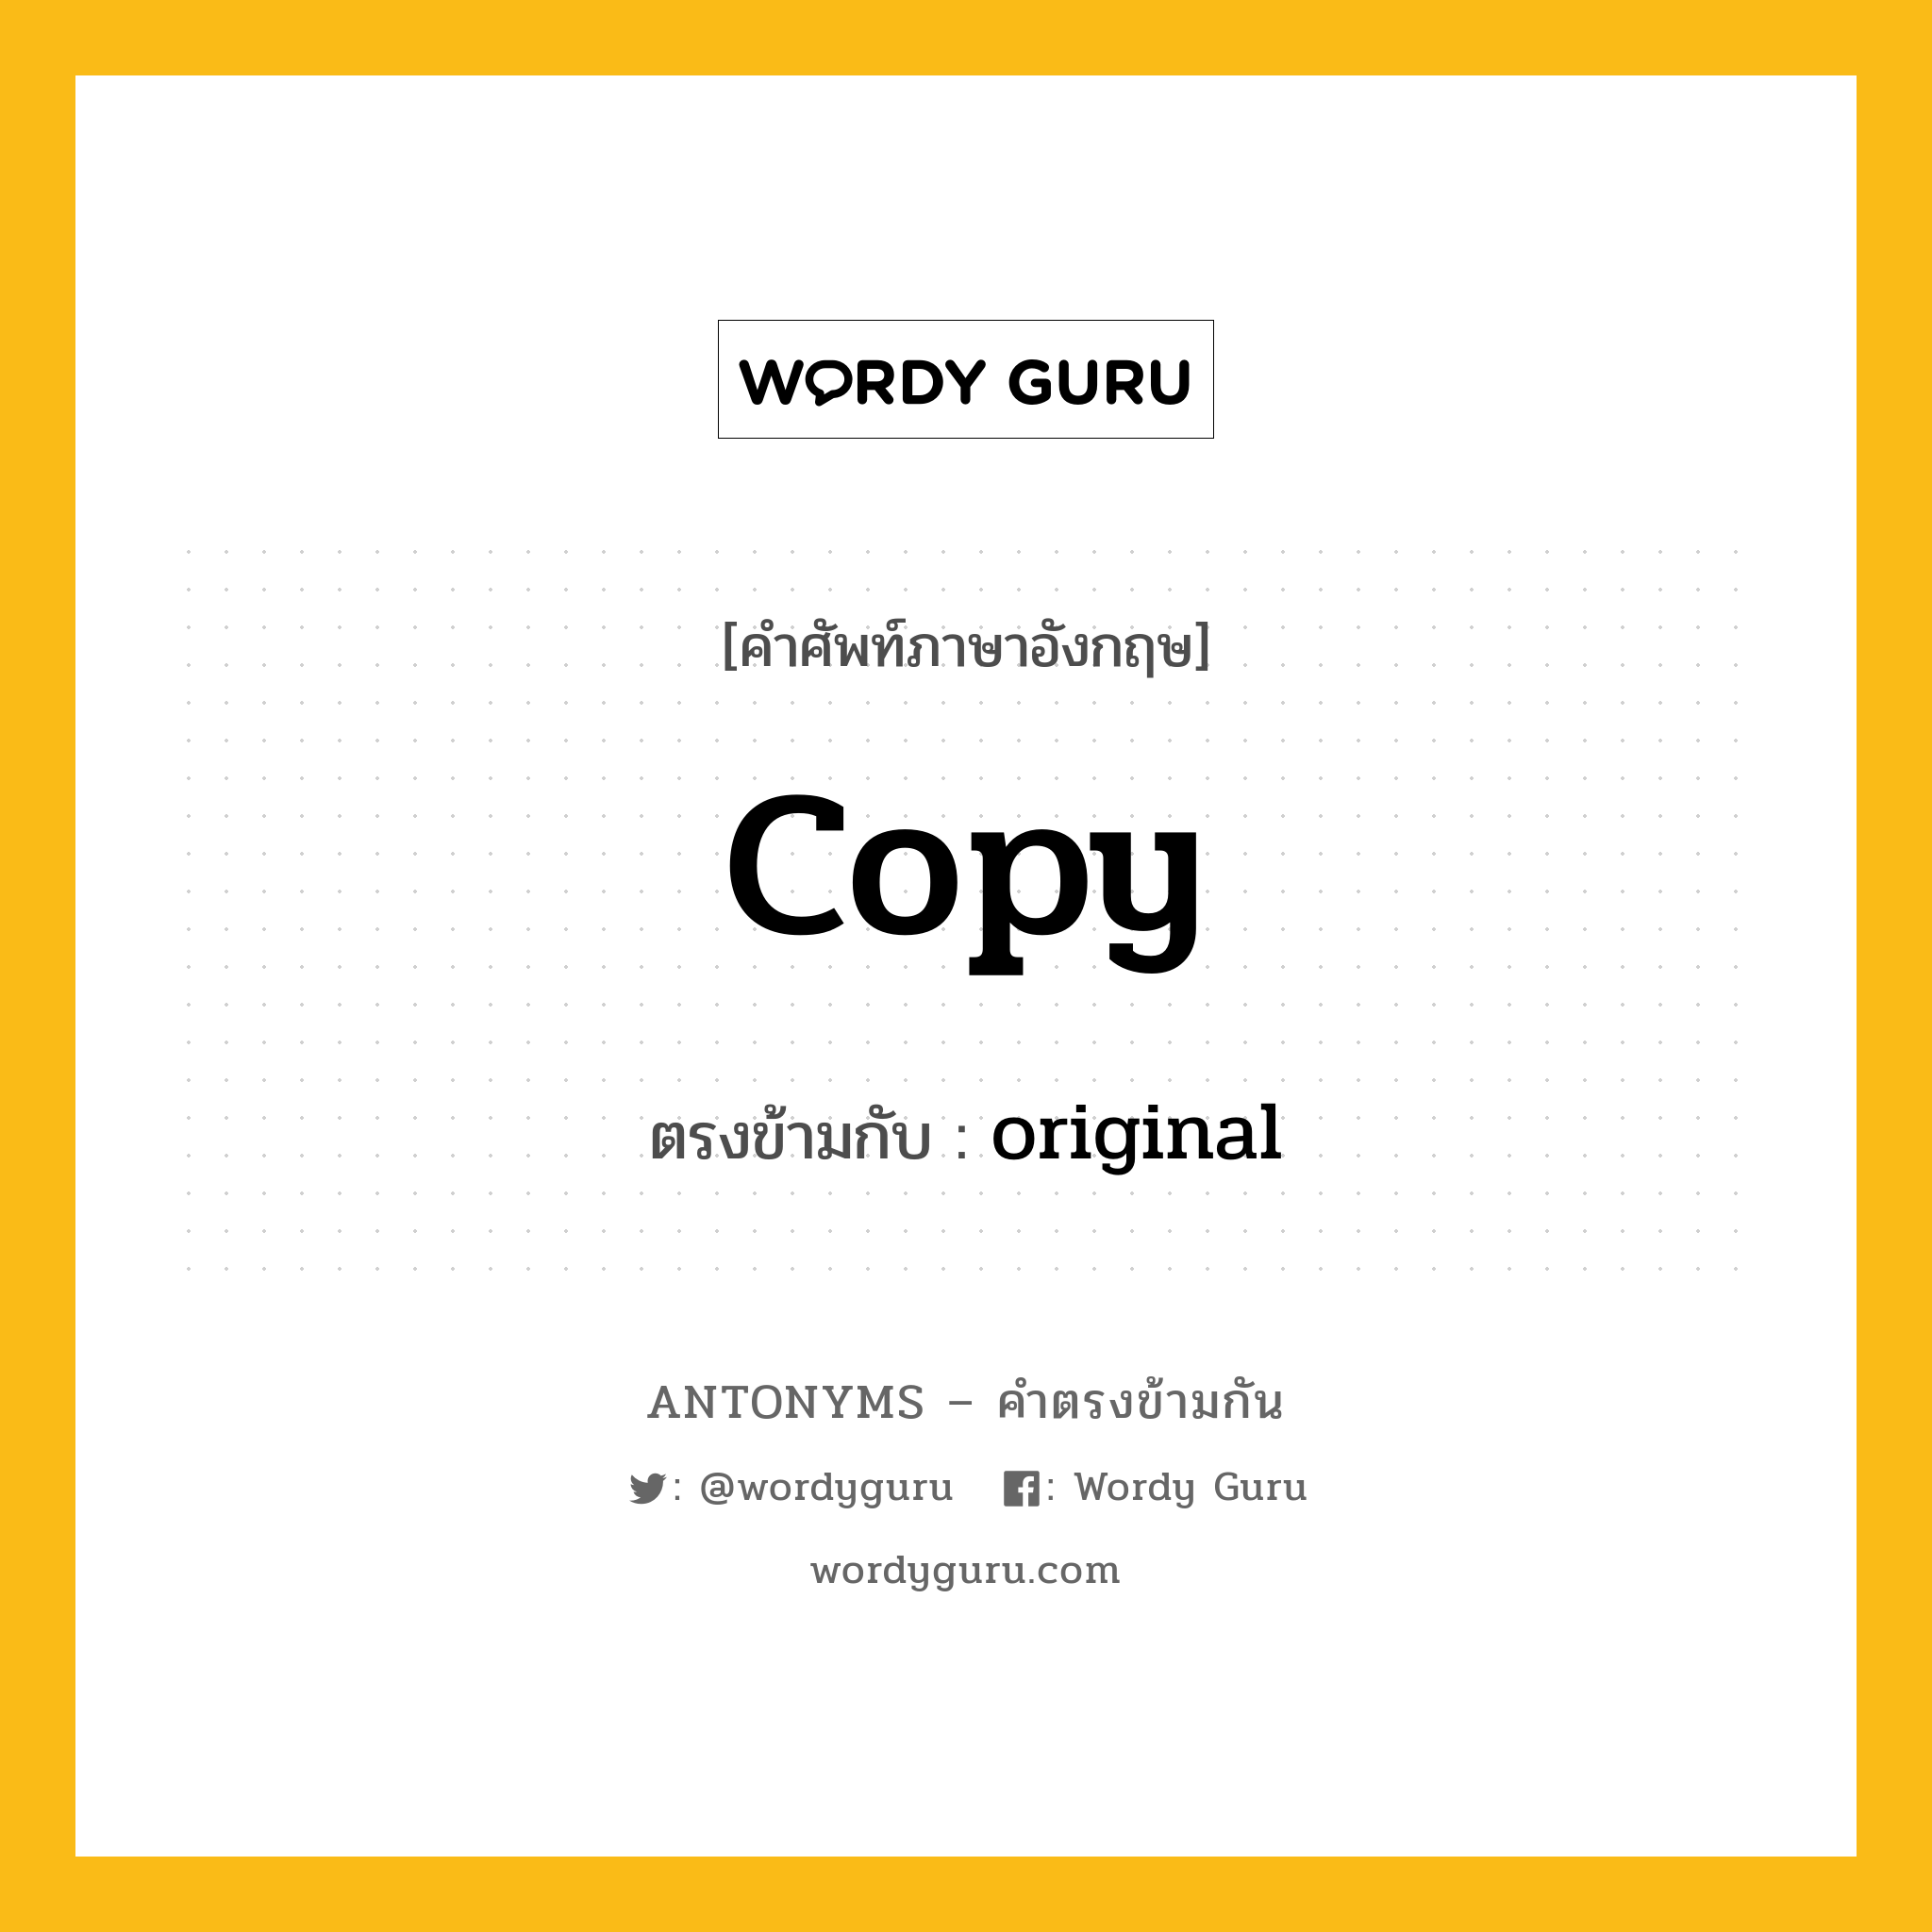 copy เป็นคำตรงข้ามกับคำไหนบ้าง?, คำศัพท์ภาษาอังกฤษ copy ตรงข้ามกับ original หมวด original